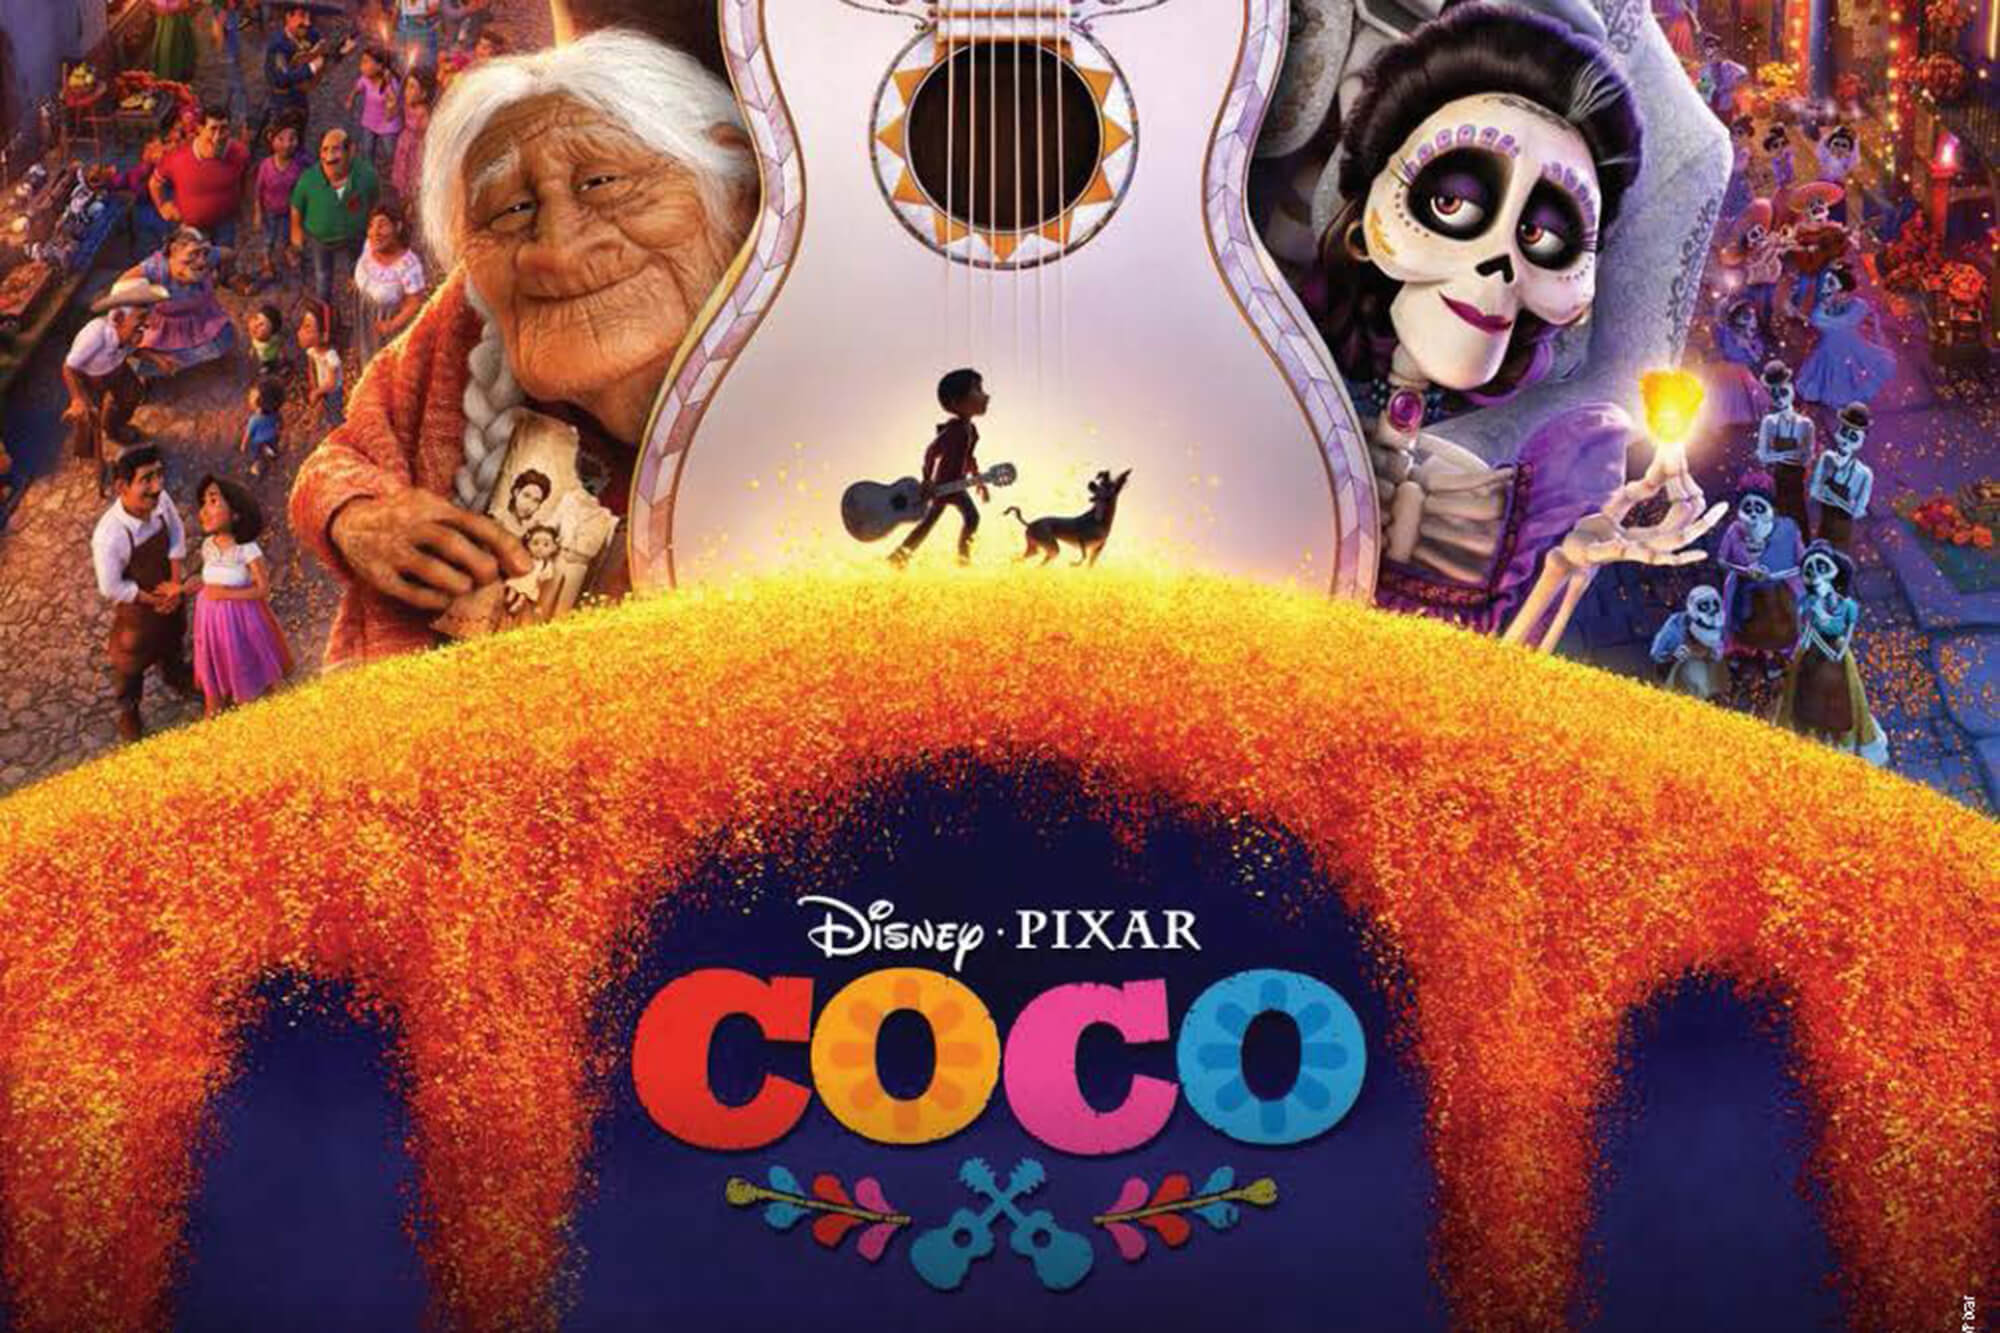 Disney's Pixar's Coco in Concert